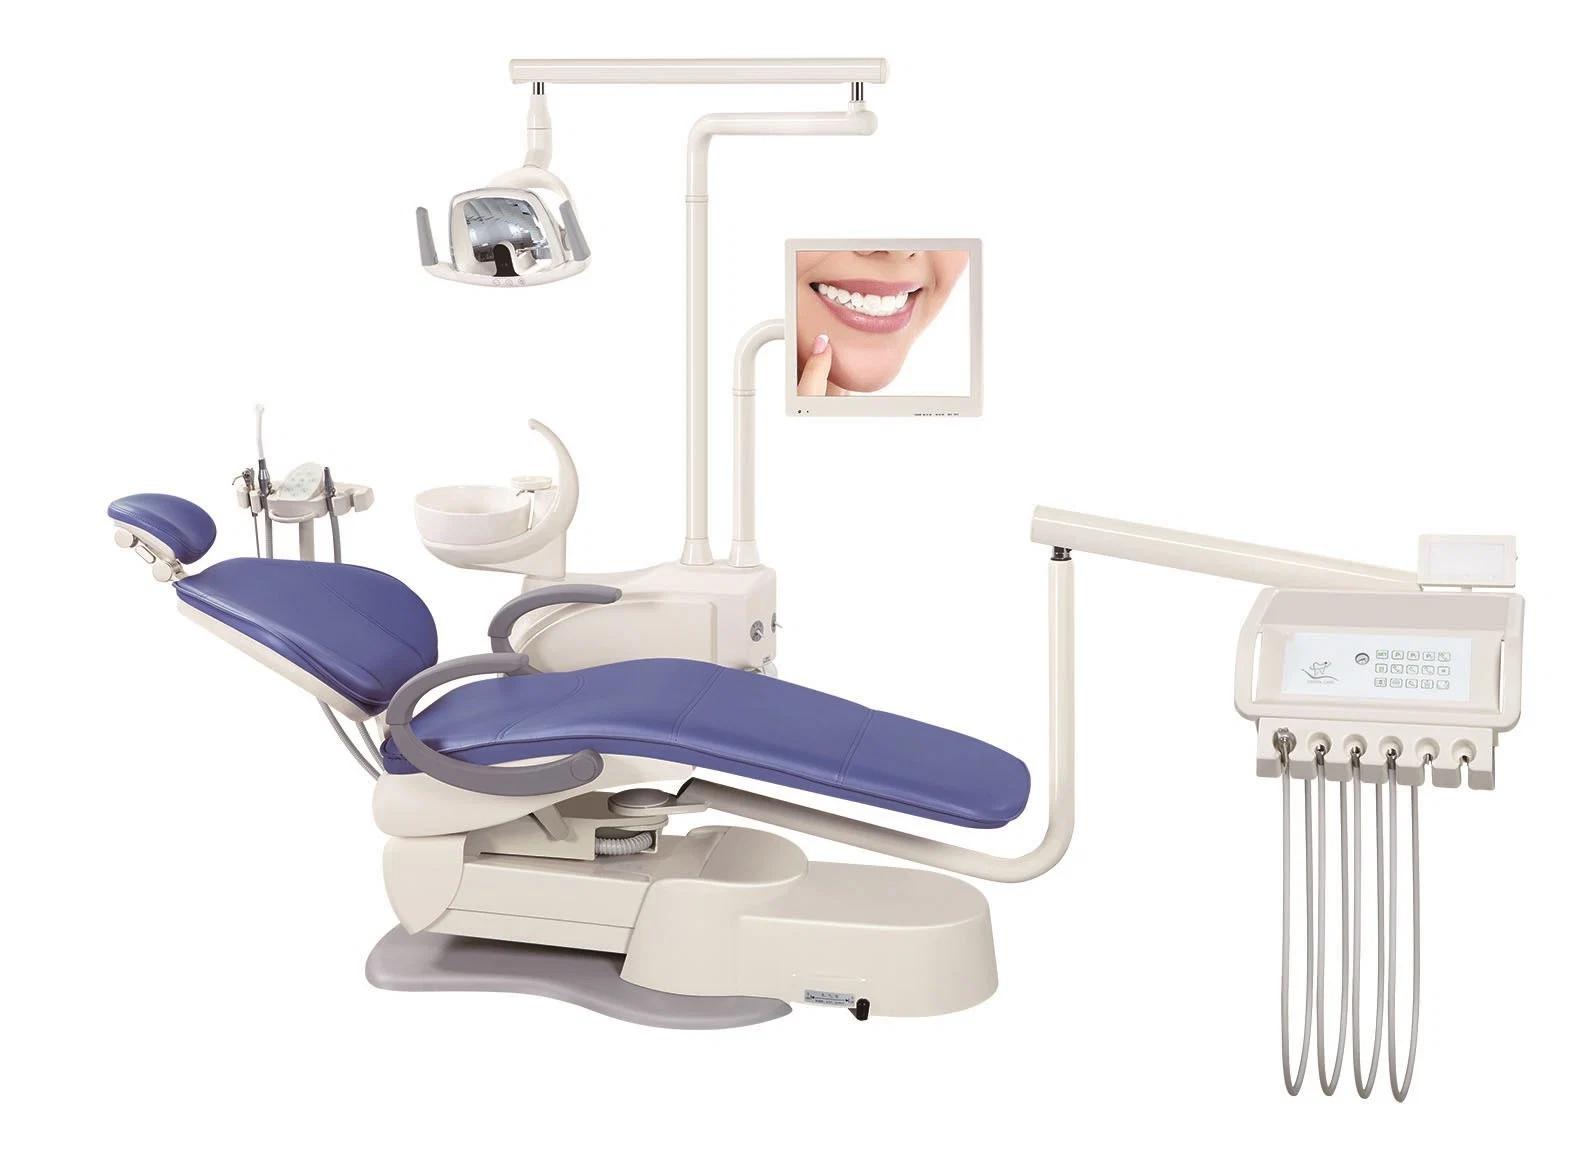 Prix d'usine de Foshan en Chine pour l'équipement dentaire Chaise dentaire unité avec 3 mémoires (Right & Left Handed)